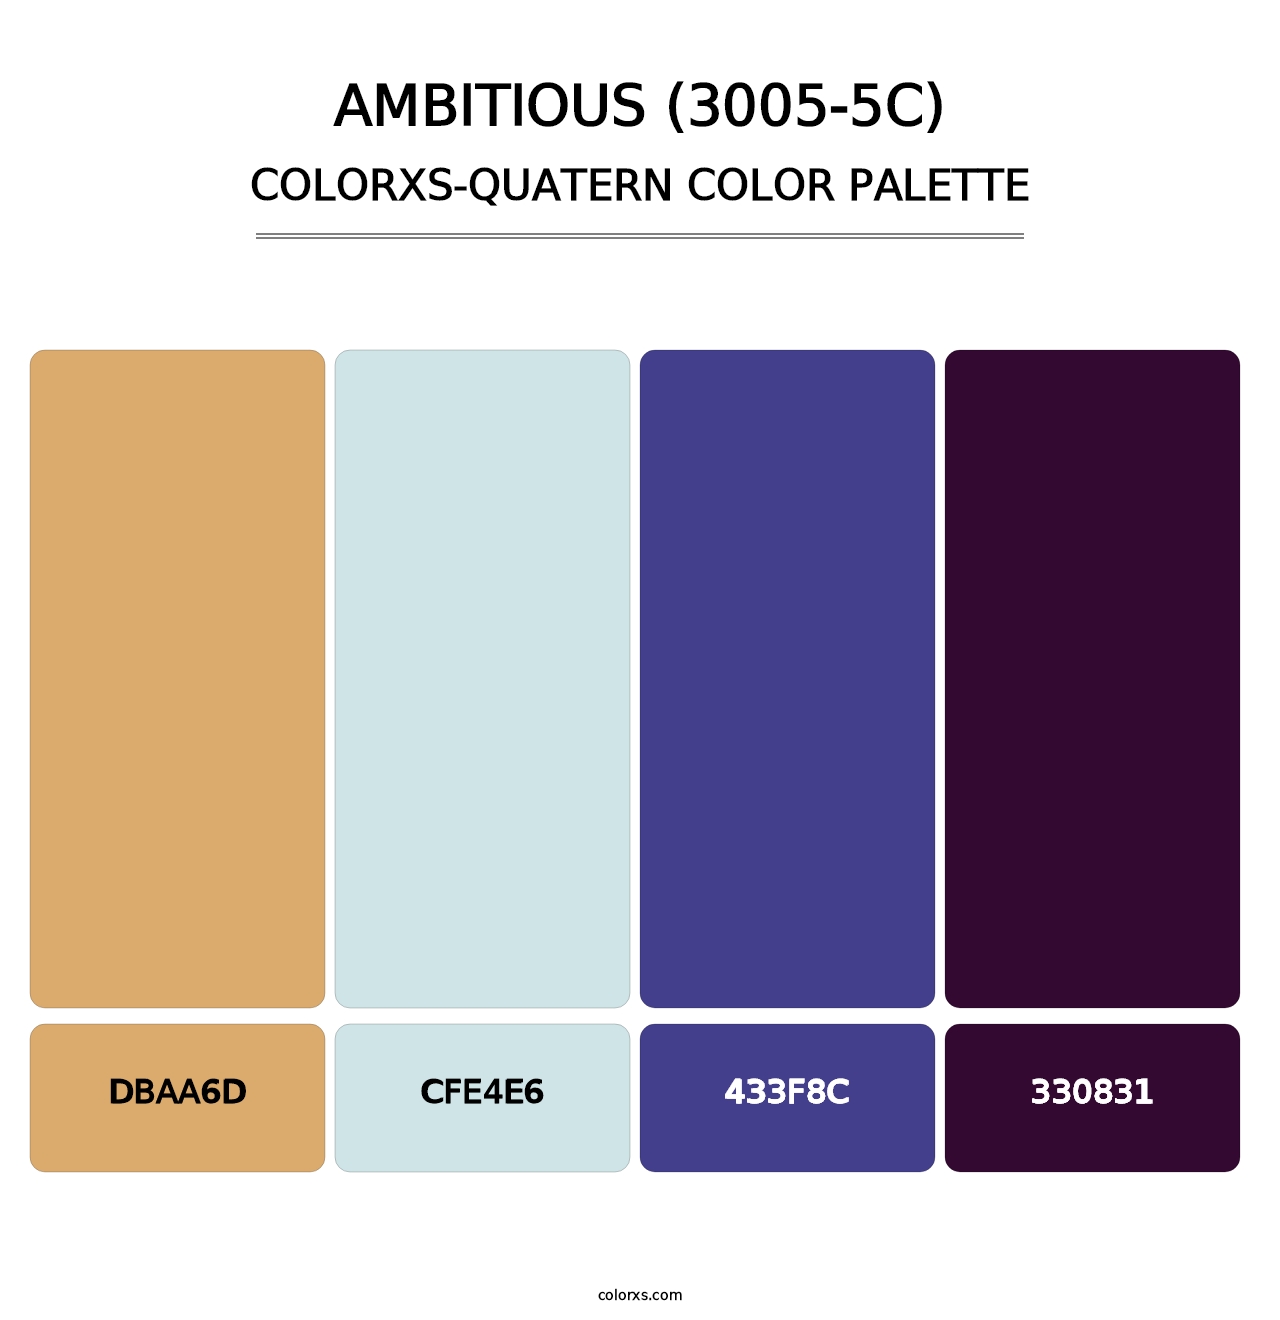 Ambitious (3005-5C) - Colorxs Quatern Palette